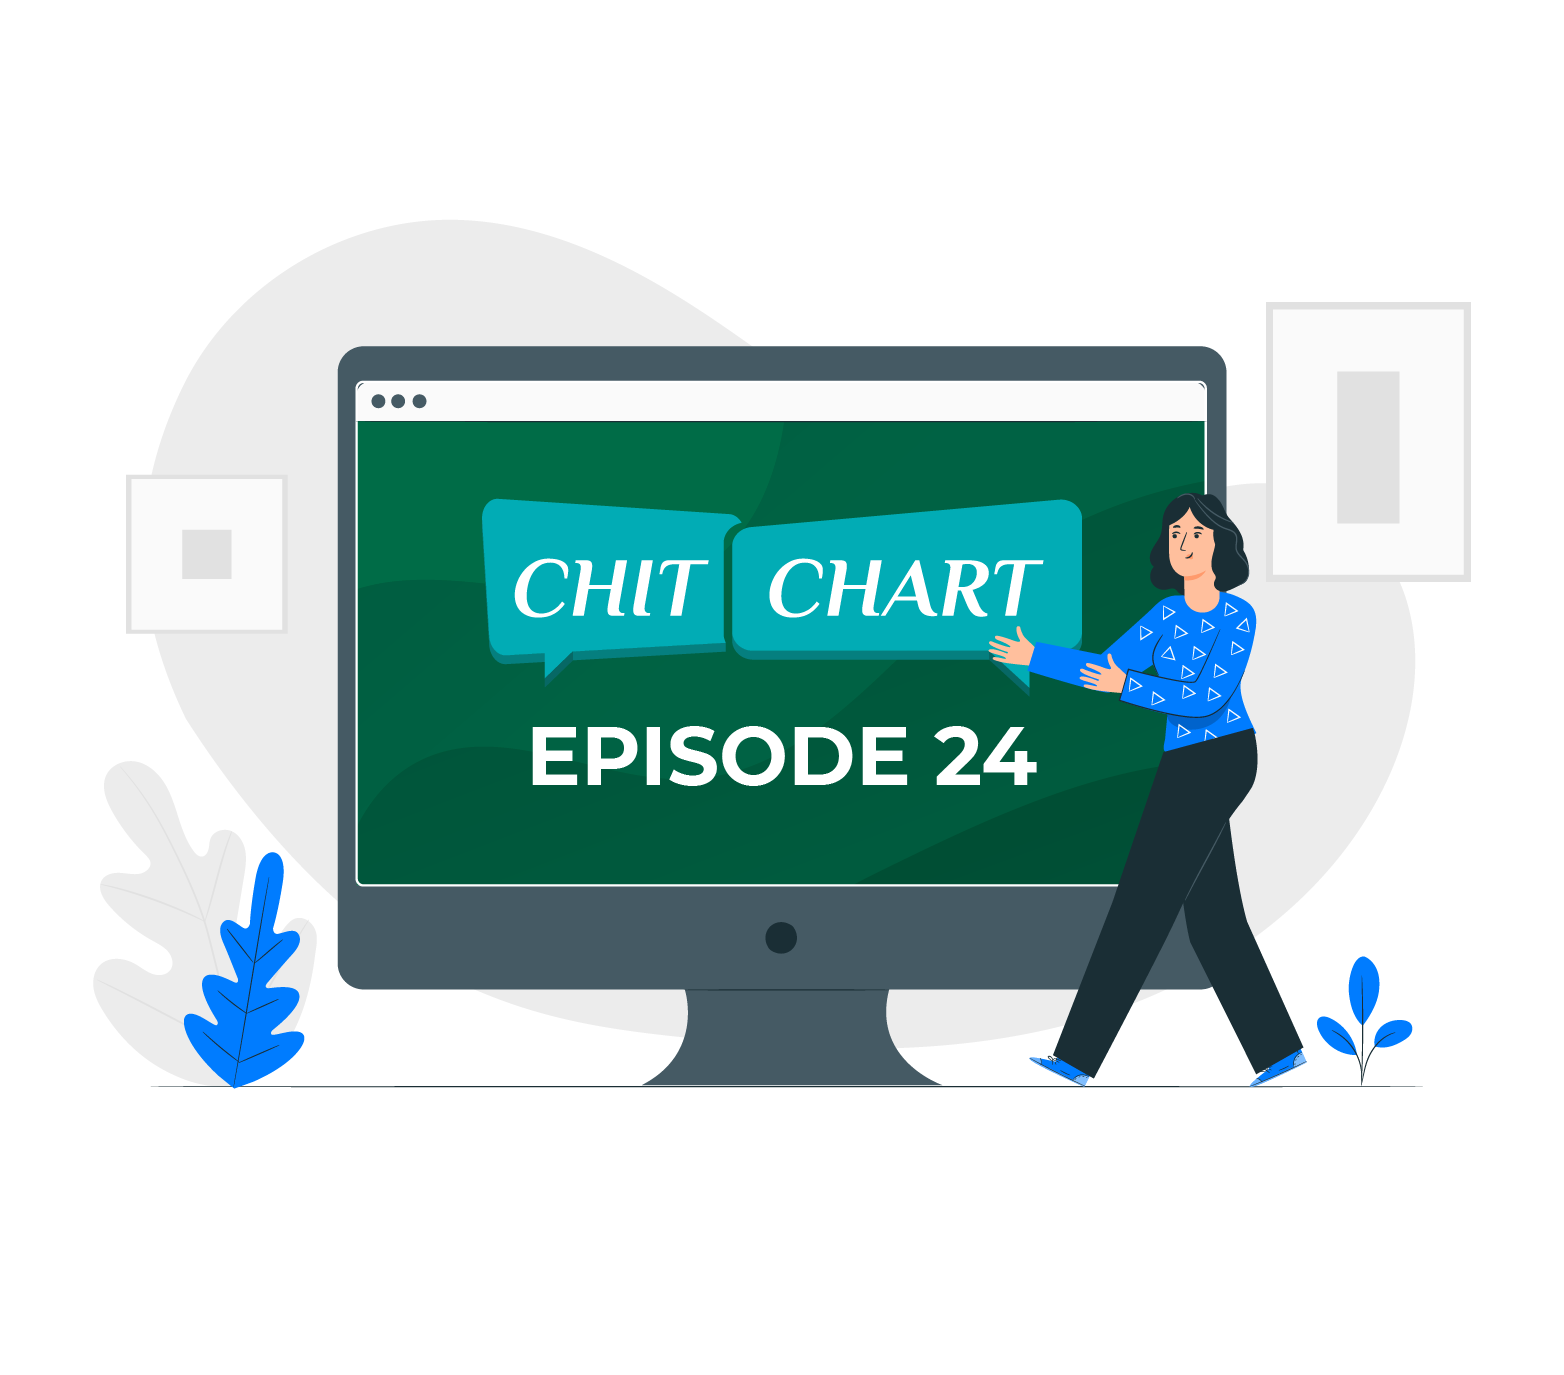 ChitChaRt : Episode 24